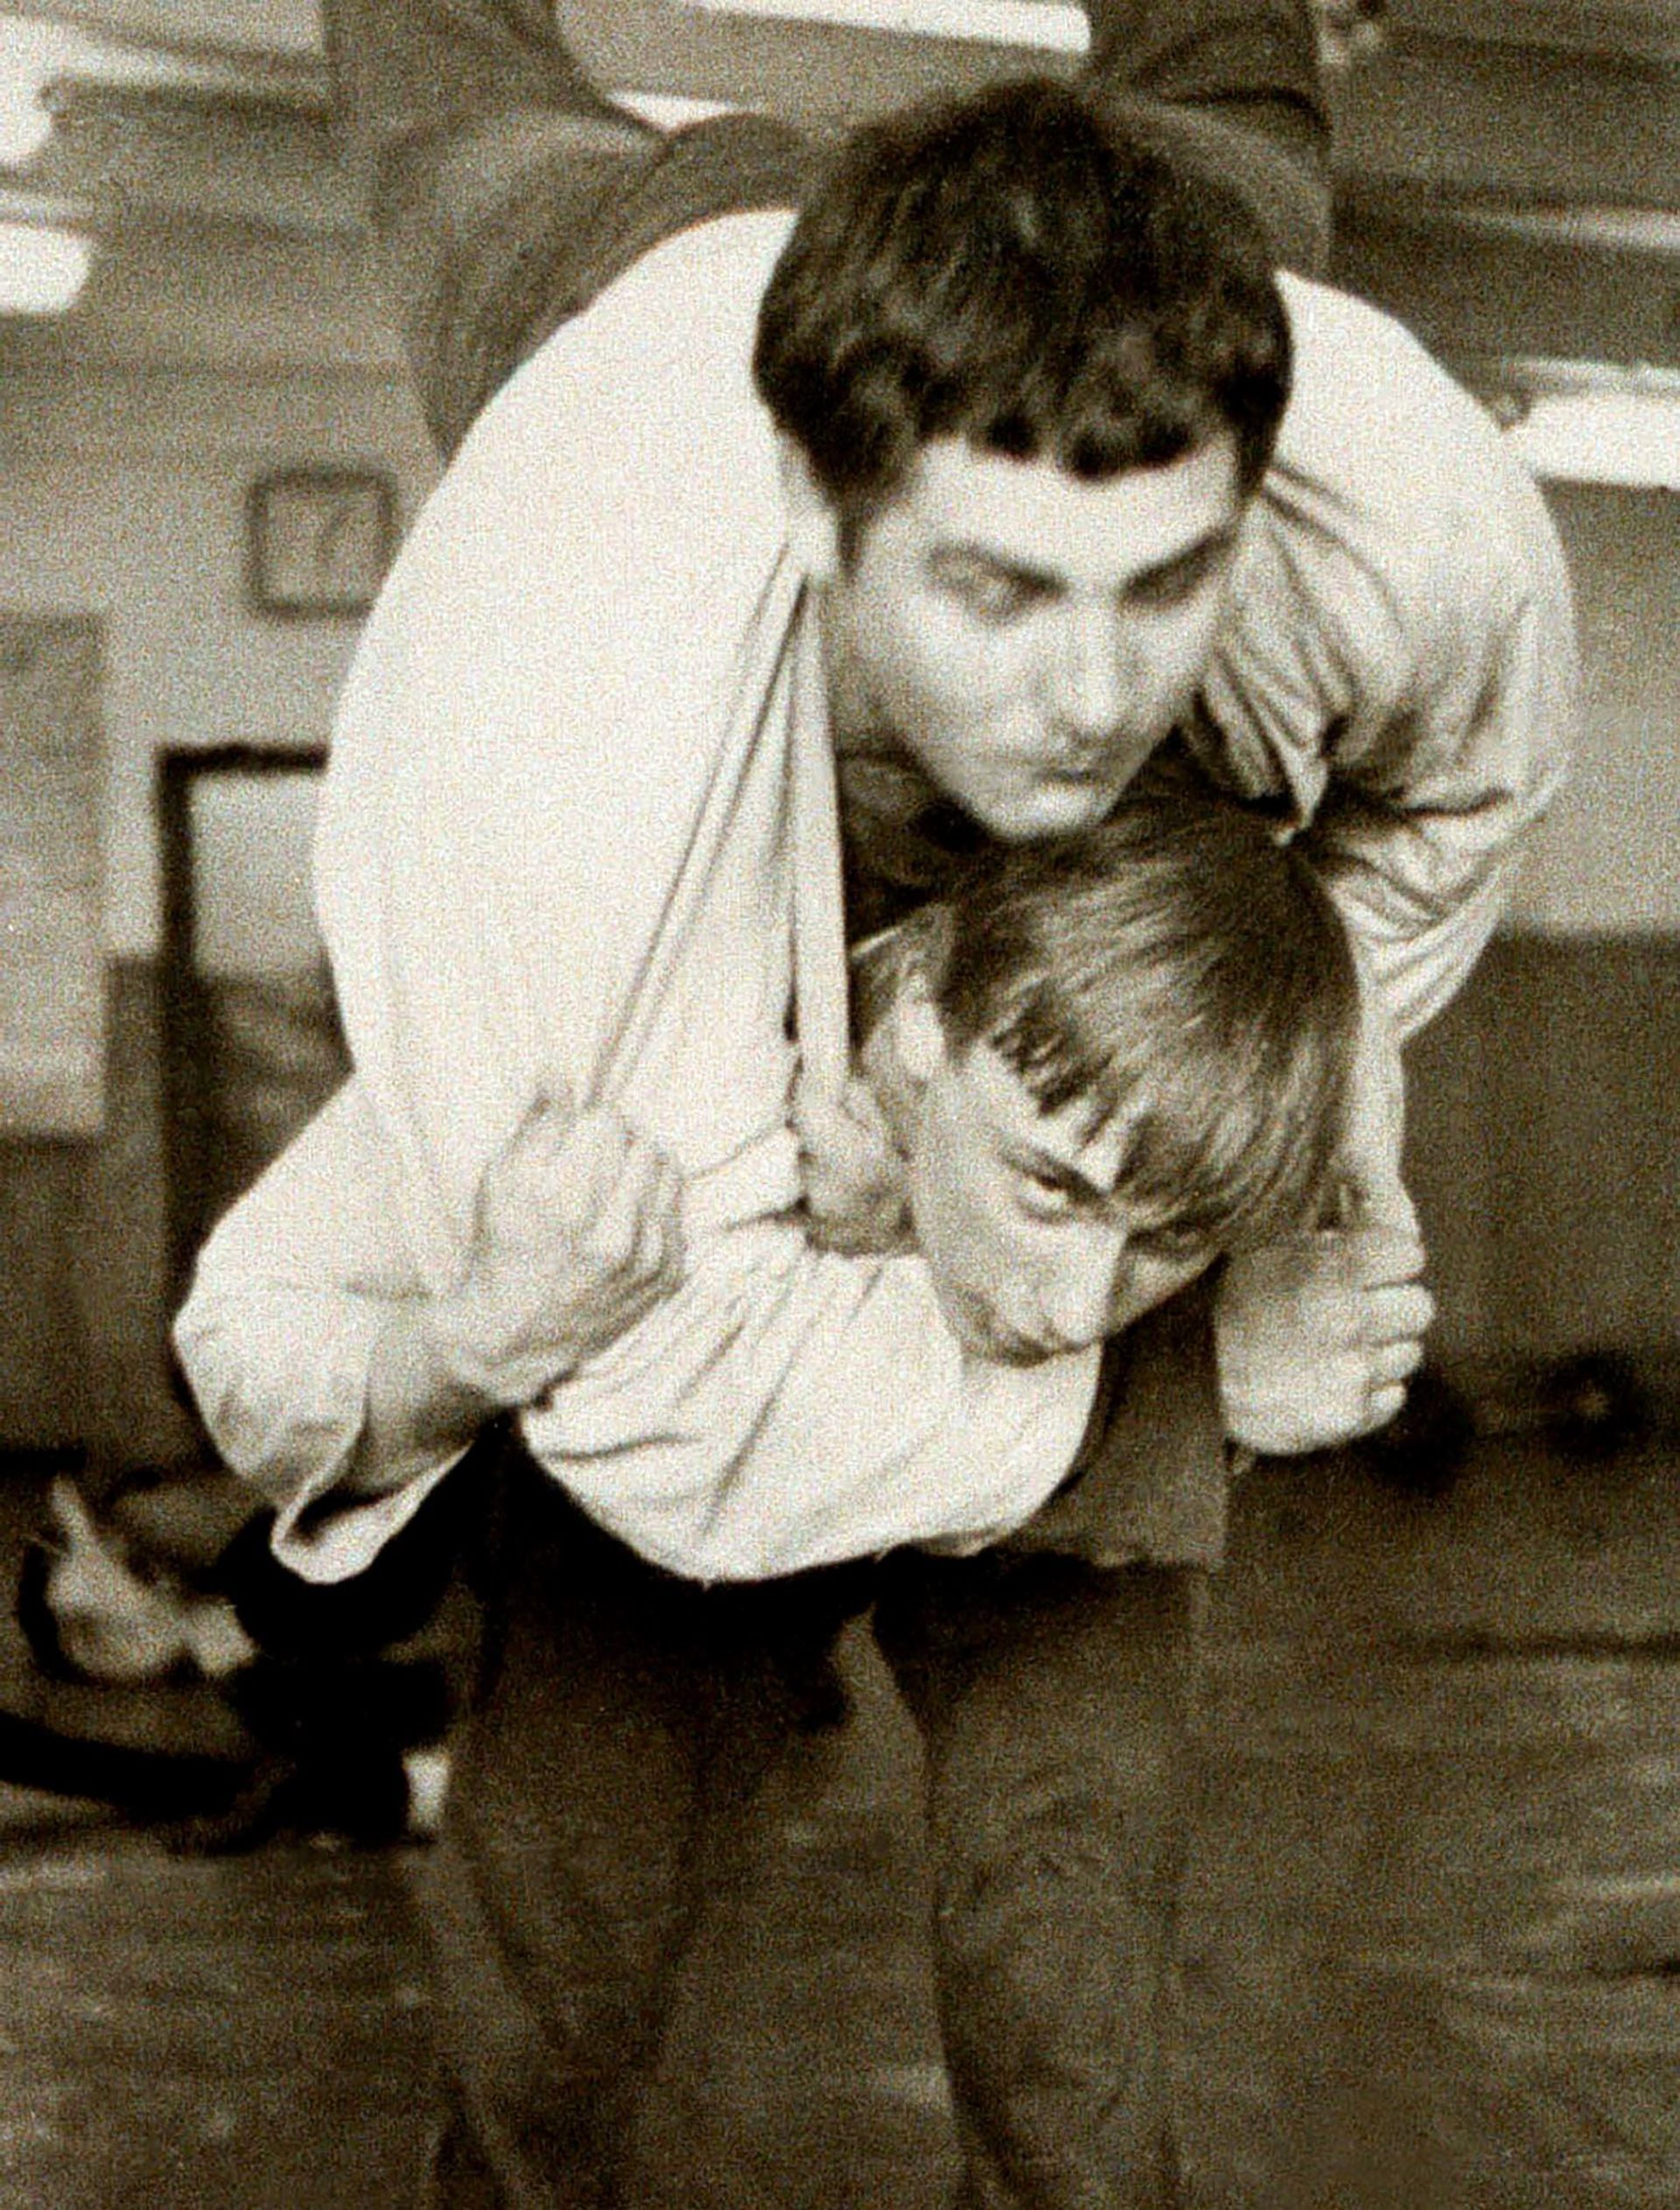 Putin en una clase de judo en la Escuela de Deportes de San Petesburgo en 1971 (Photo by Laski Diffusion)